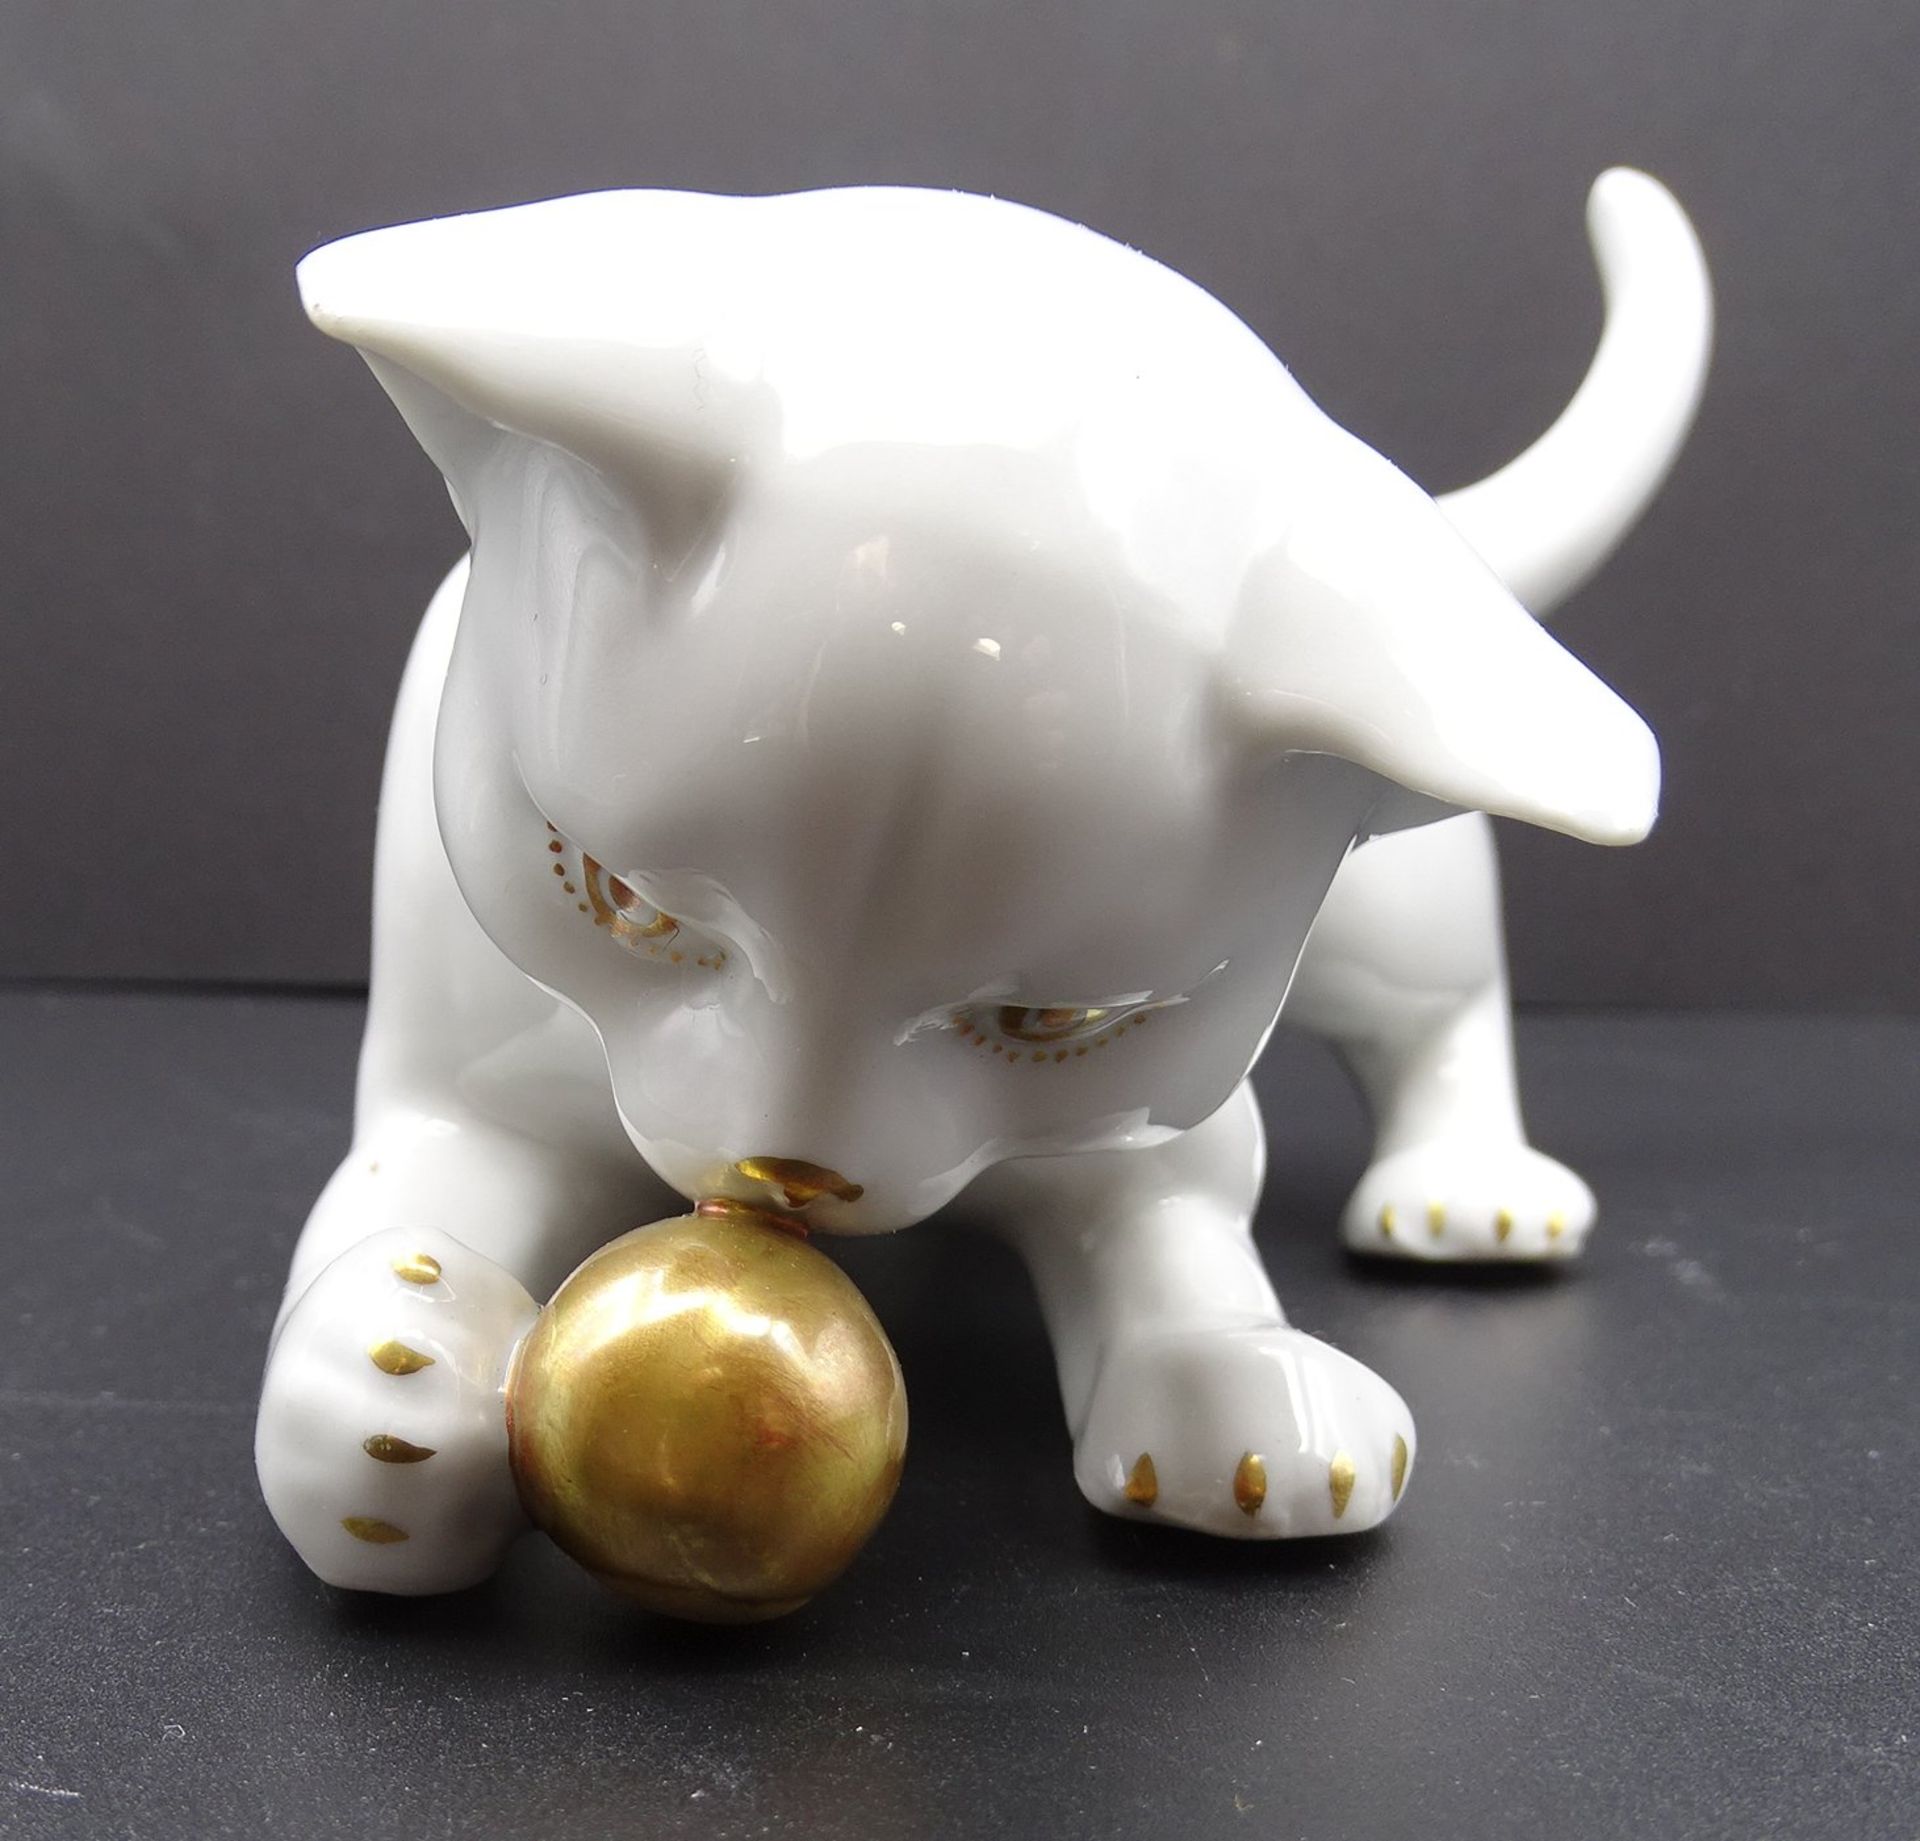 Katze mit Ball "Metzler & Ortloff", Katze mit einem Ball spielend, weiß, ziervergoldet, L. 19cm - Image 6 of 6